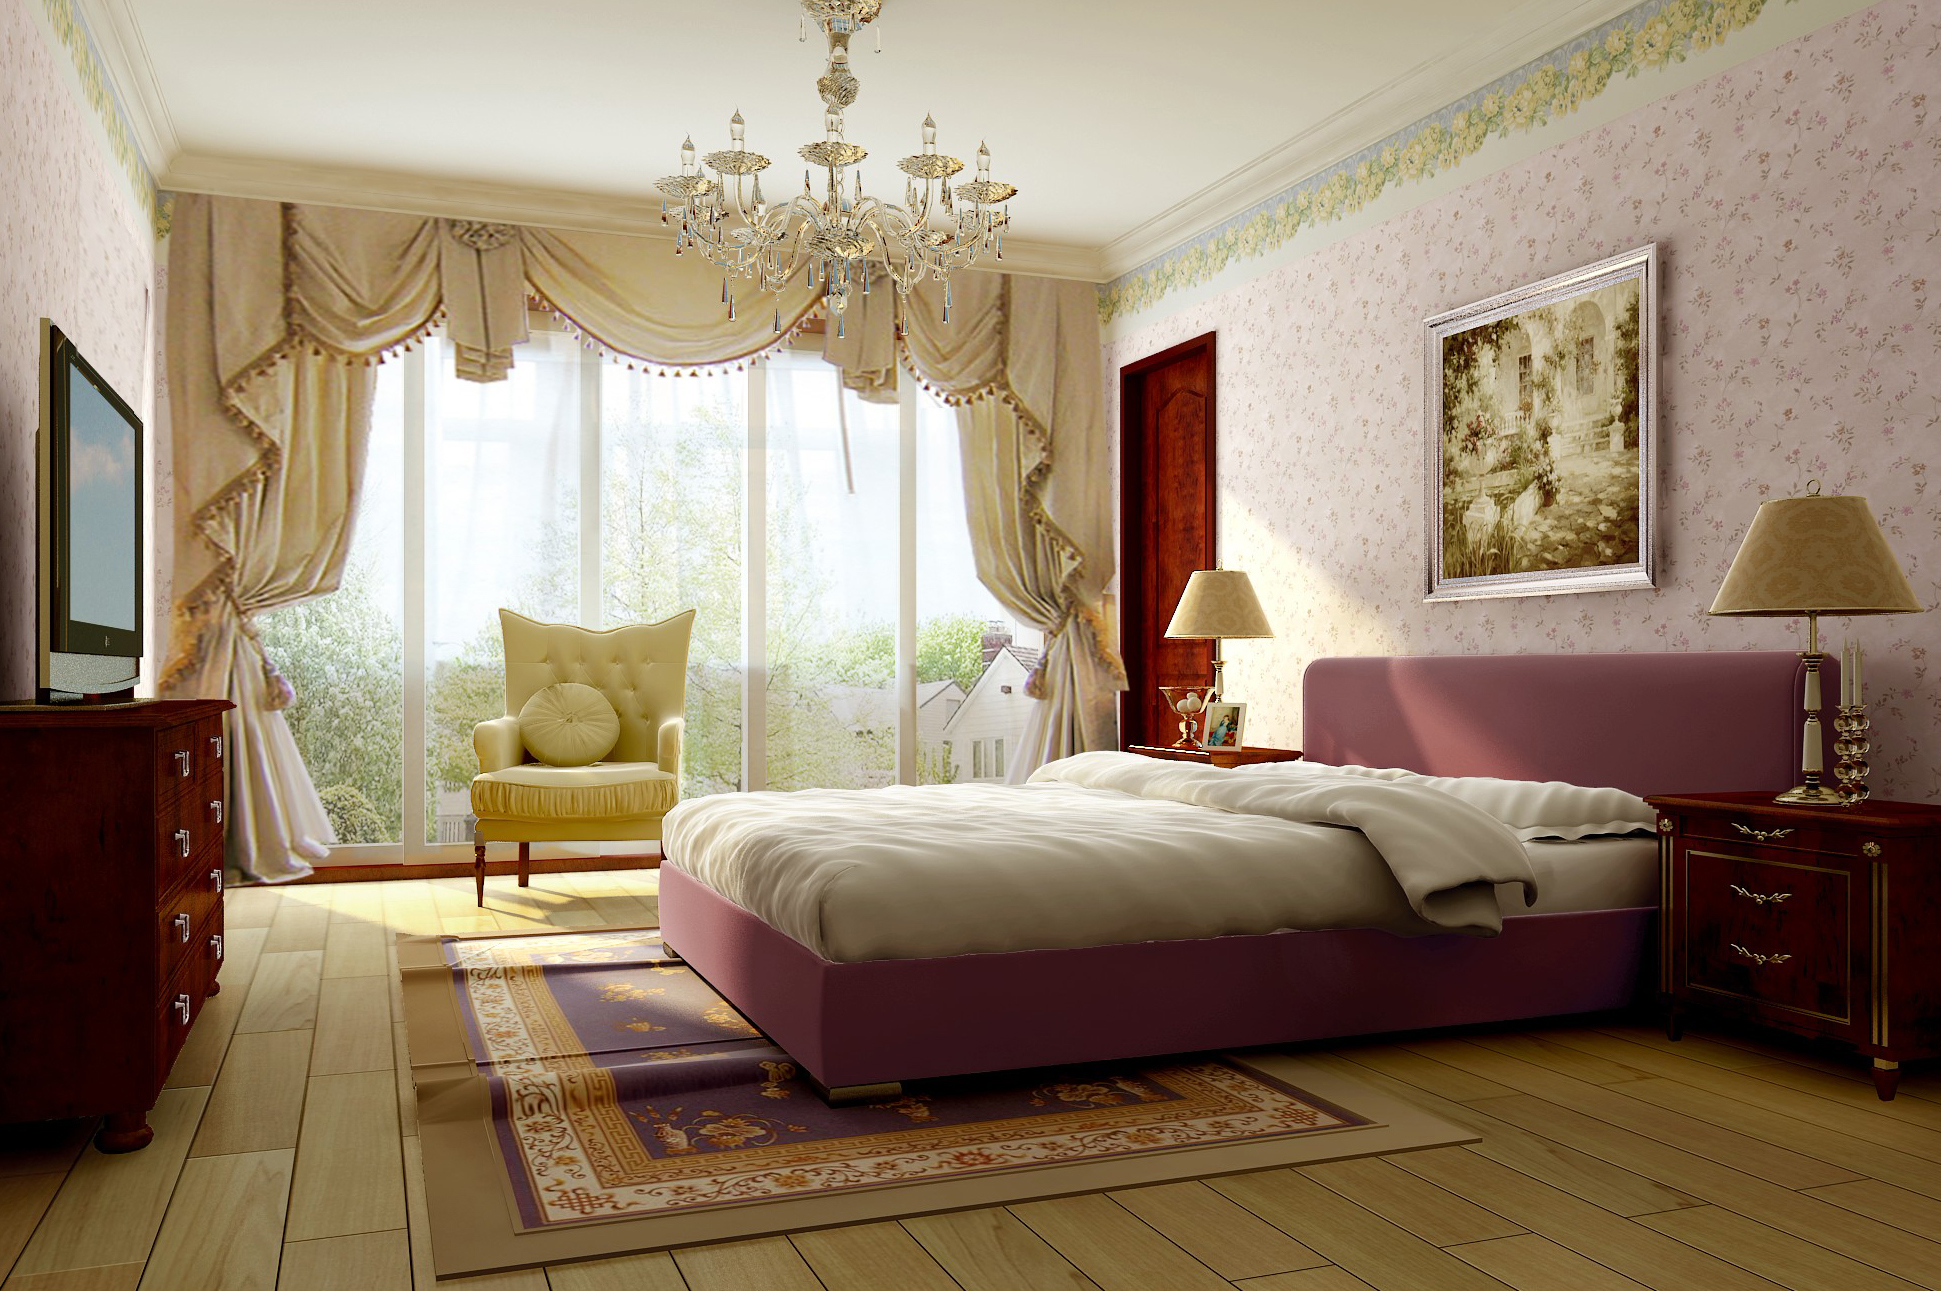 简约 欧式 田园 三居 卧室图片来自实创装饰上海公司在150平欧式与田园风格完美演绎的分享